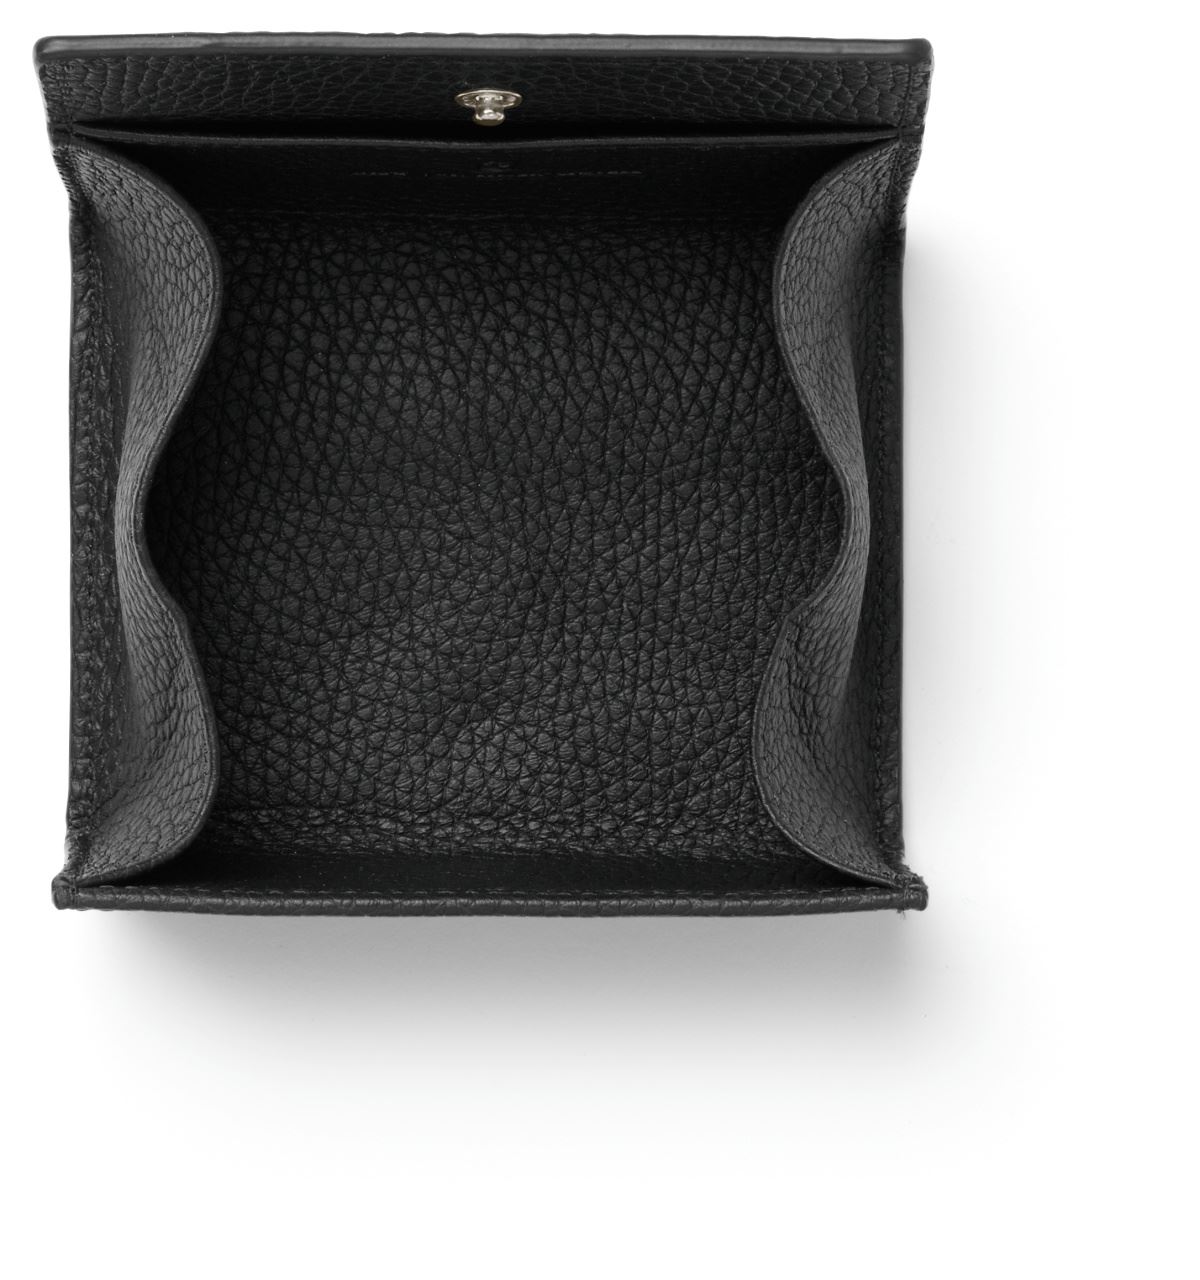 Graf-von-Faber-Castell - Coin purse Cashmere, black